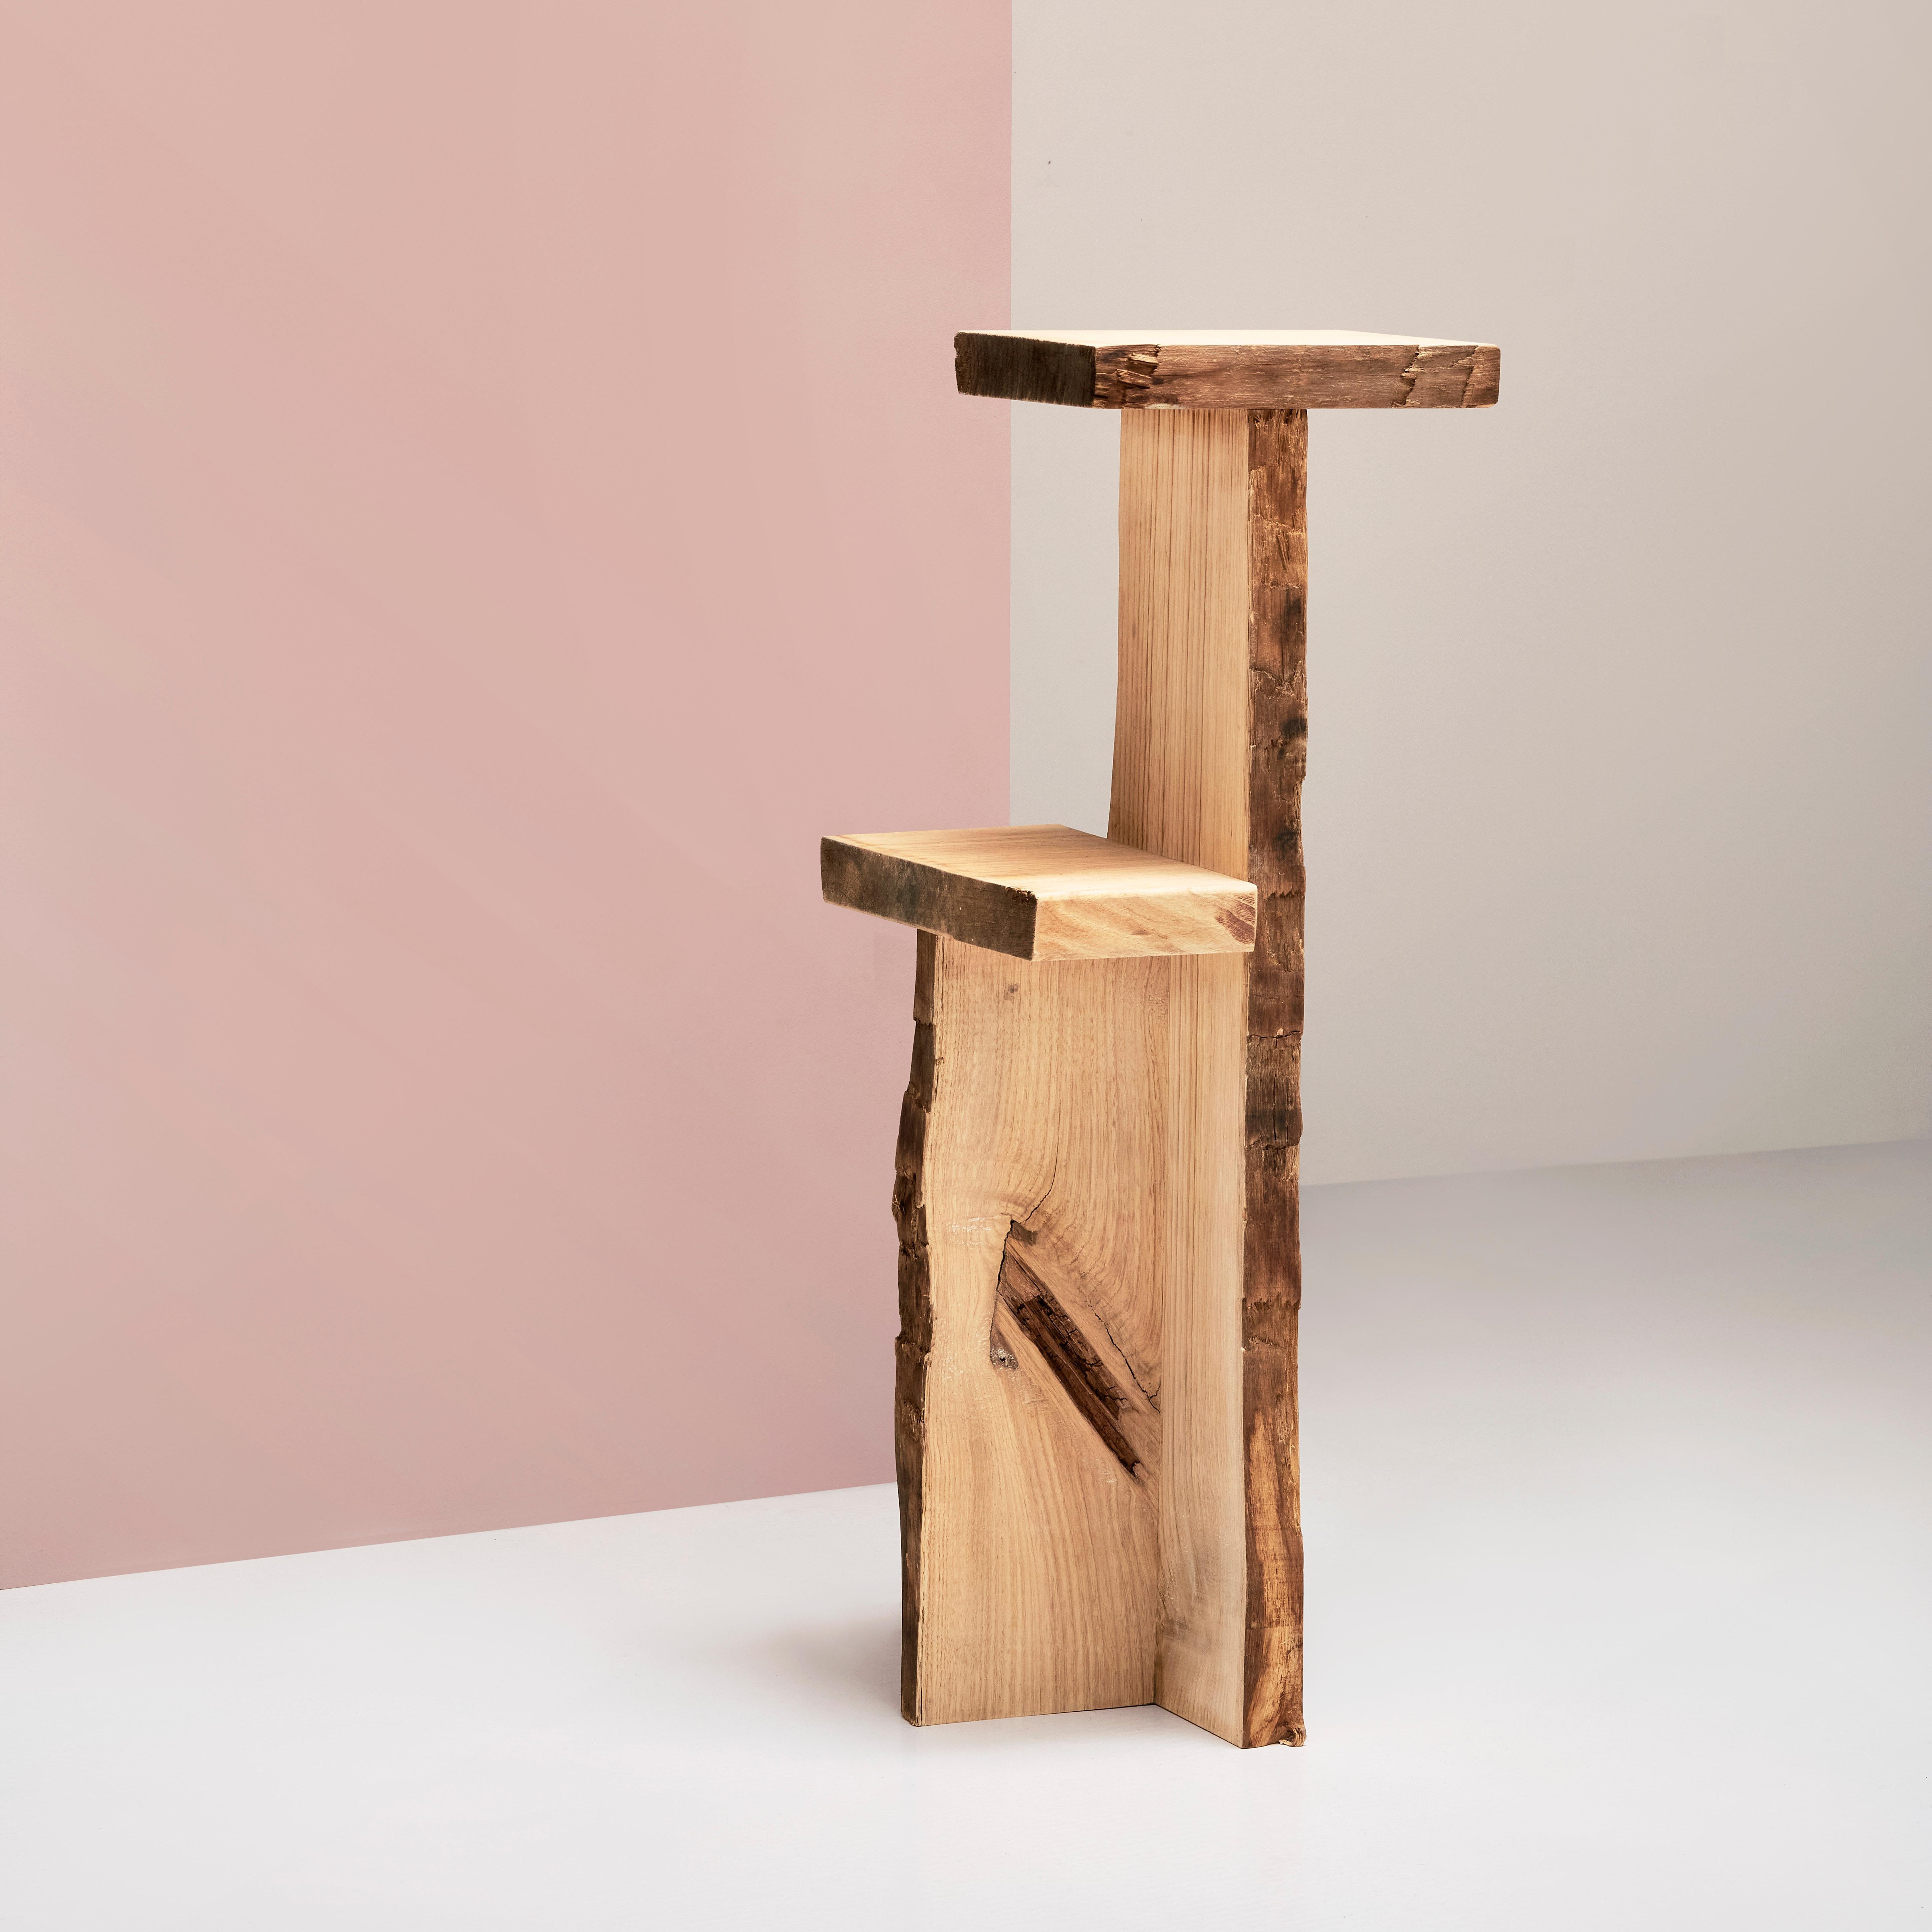 Doppelpodium aus geriffeltem Holz von Willem Van Hooff
Handgefertigt
Abmessungen: B 27 x H 91 cm (Die Maße können variieren, da die Stücke handgefertigt sind und leichte Größenabweichungen aufweisen können)
MATERIALIEN: Holz.


Willem van Hooff ist